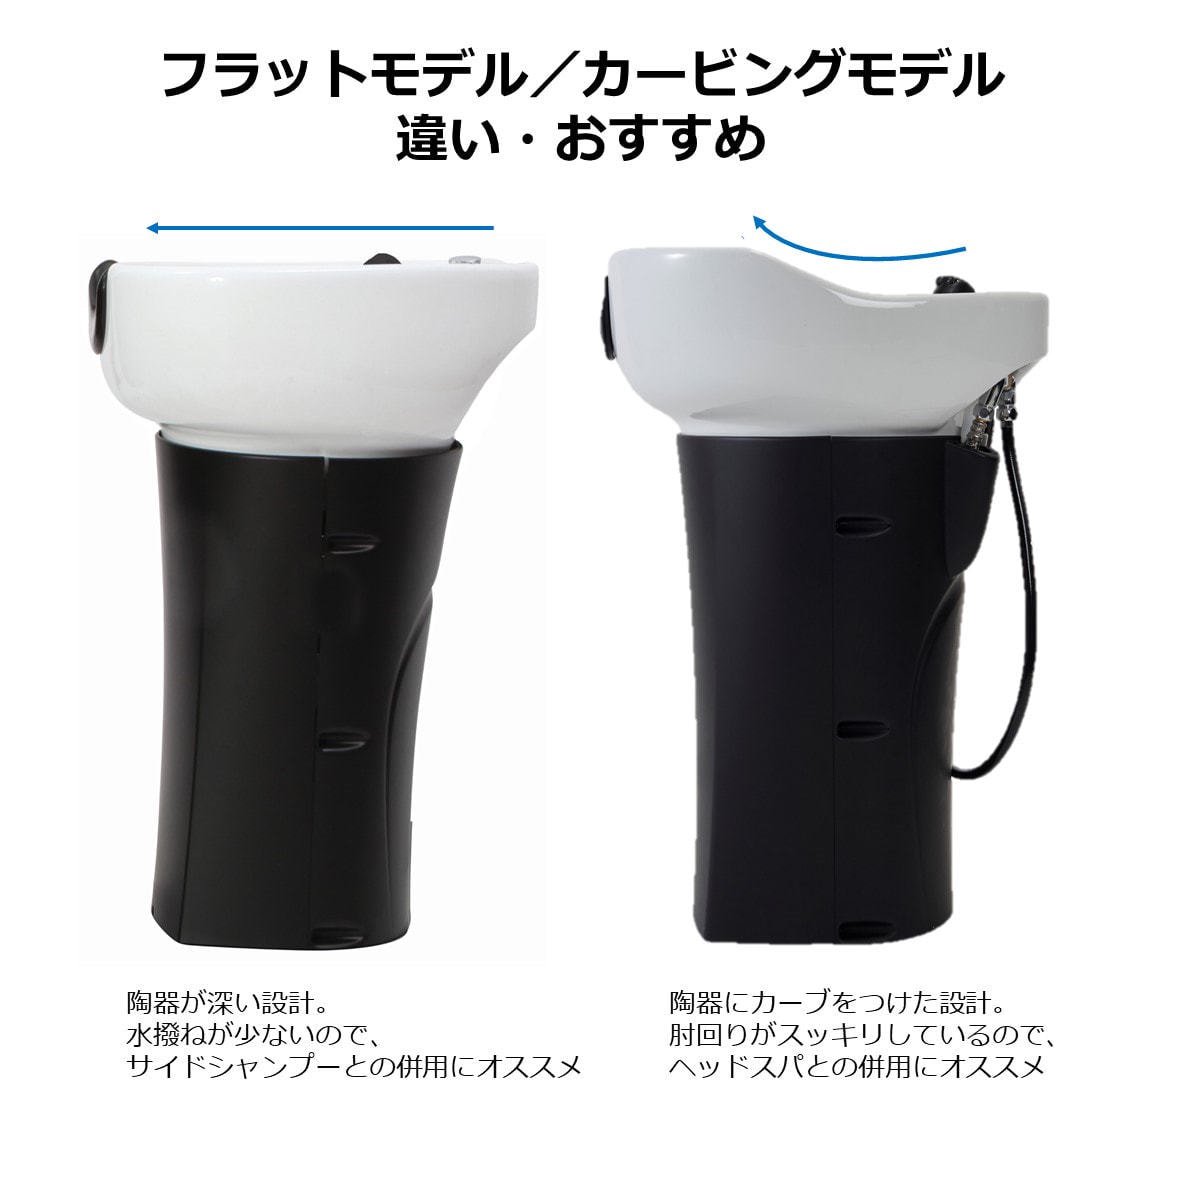 【新品】ビューティガレージ 『リラクゼーションシャンプーユニット RUBINO２【BASIC】(ルビノ２ ベーシック) 日本製陶器旧型フラットモデル  日本製水栓金具』